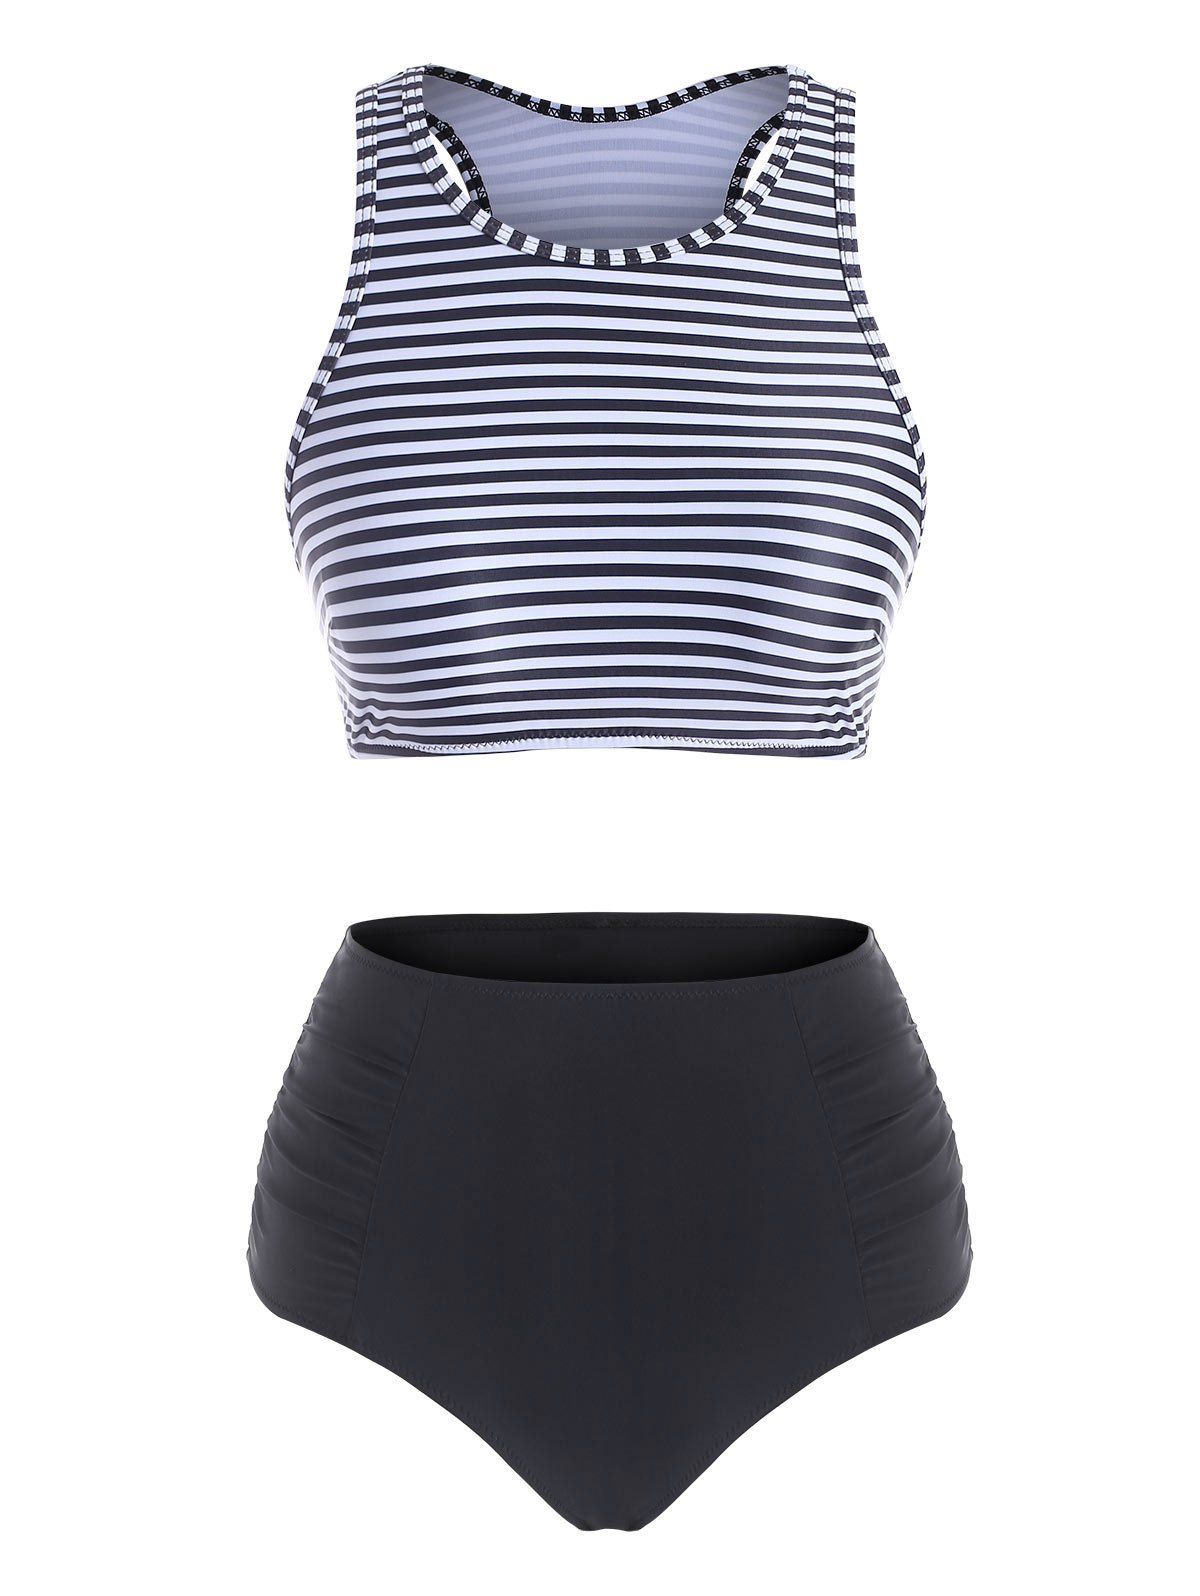 Ruched High Waisted Stripes Tankini Swimwear - BLACK L